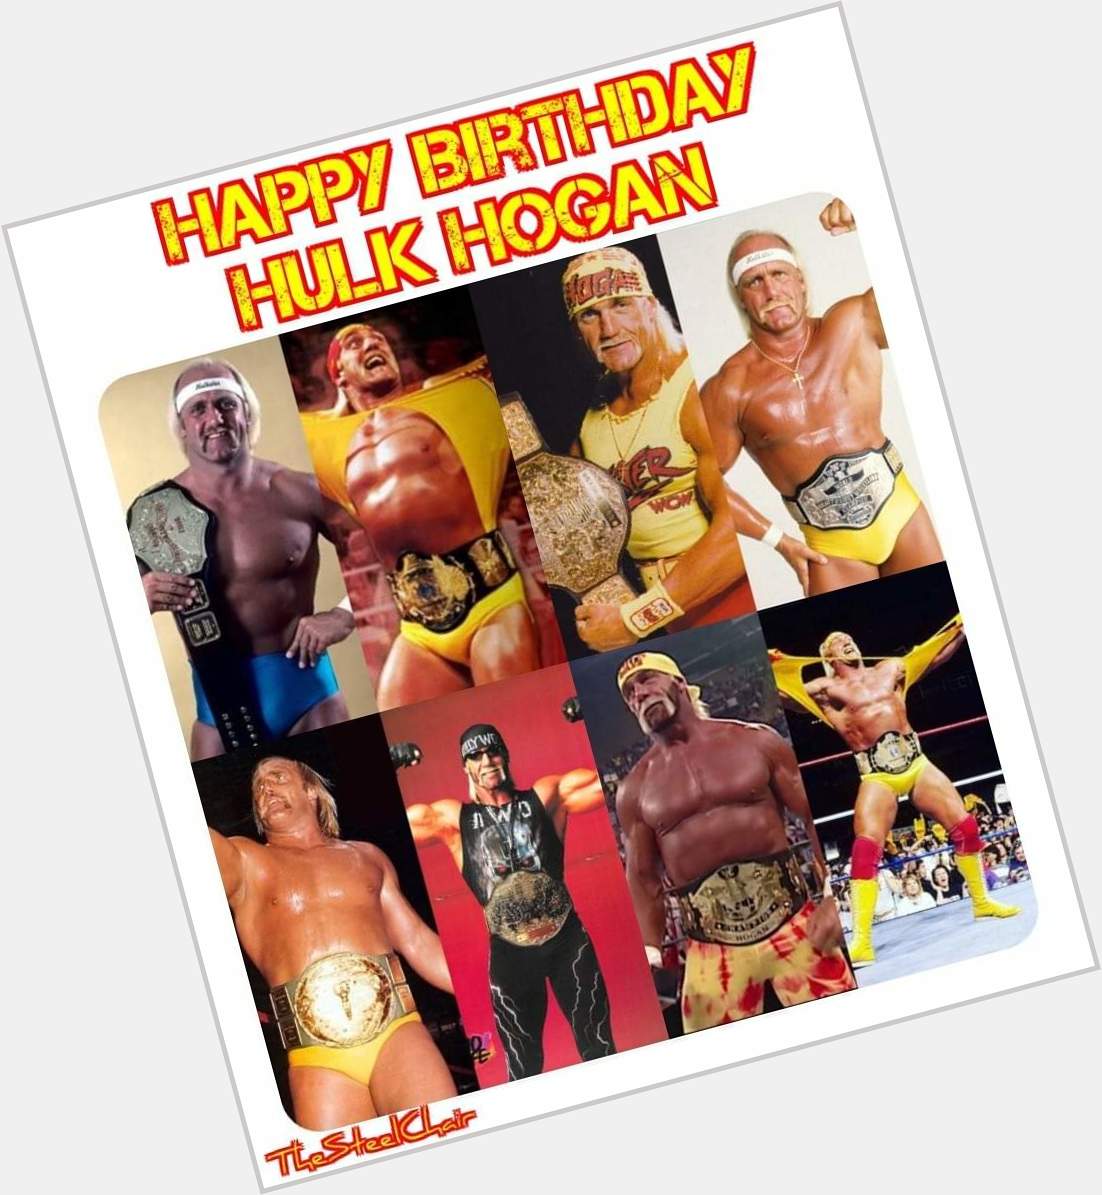 Happy 67th birthday to Hulk Hogan!   